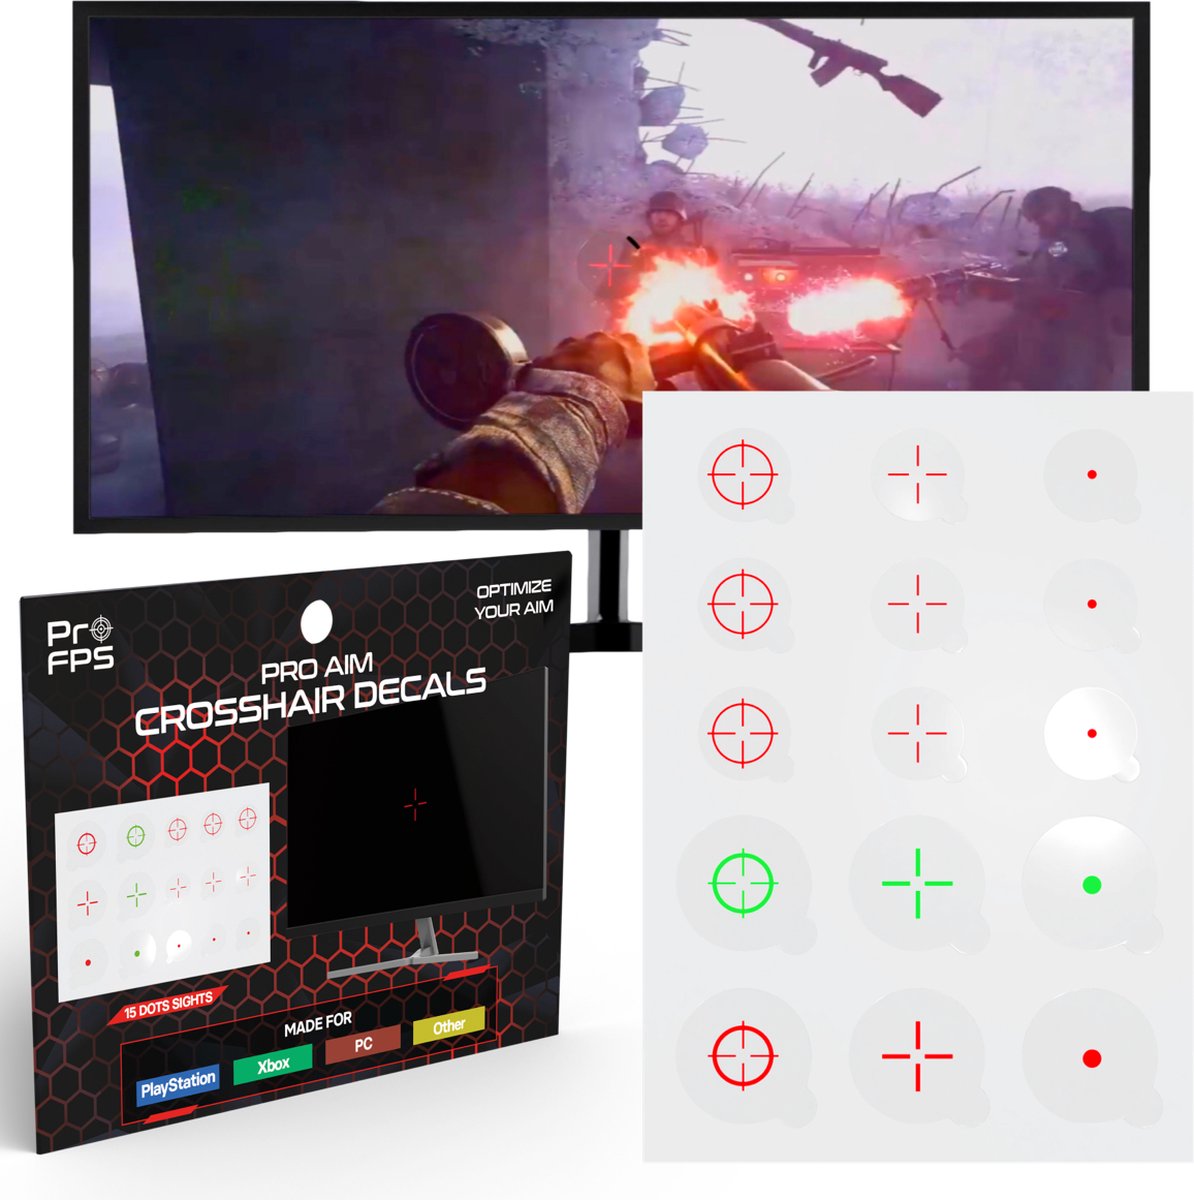 ProFPS Crosshair Decals Stickers geschikt voor PS4, PS5, PC & Xbox - Quick Scope Aim Assist - eSports Game Accessoires - 15 stuks